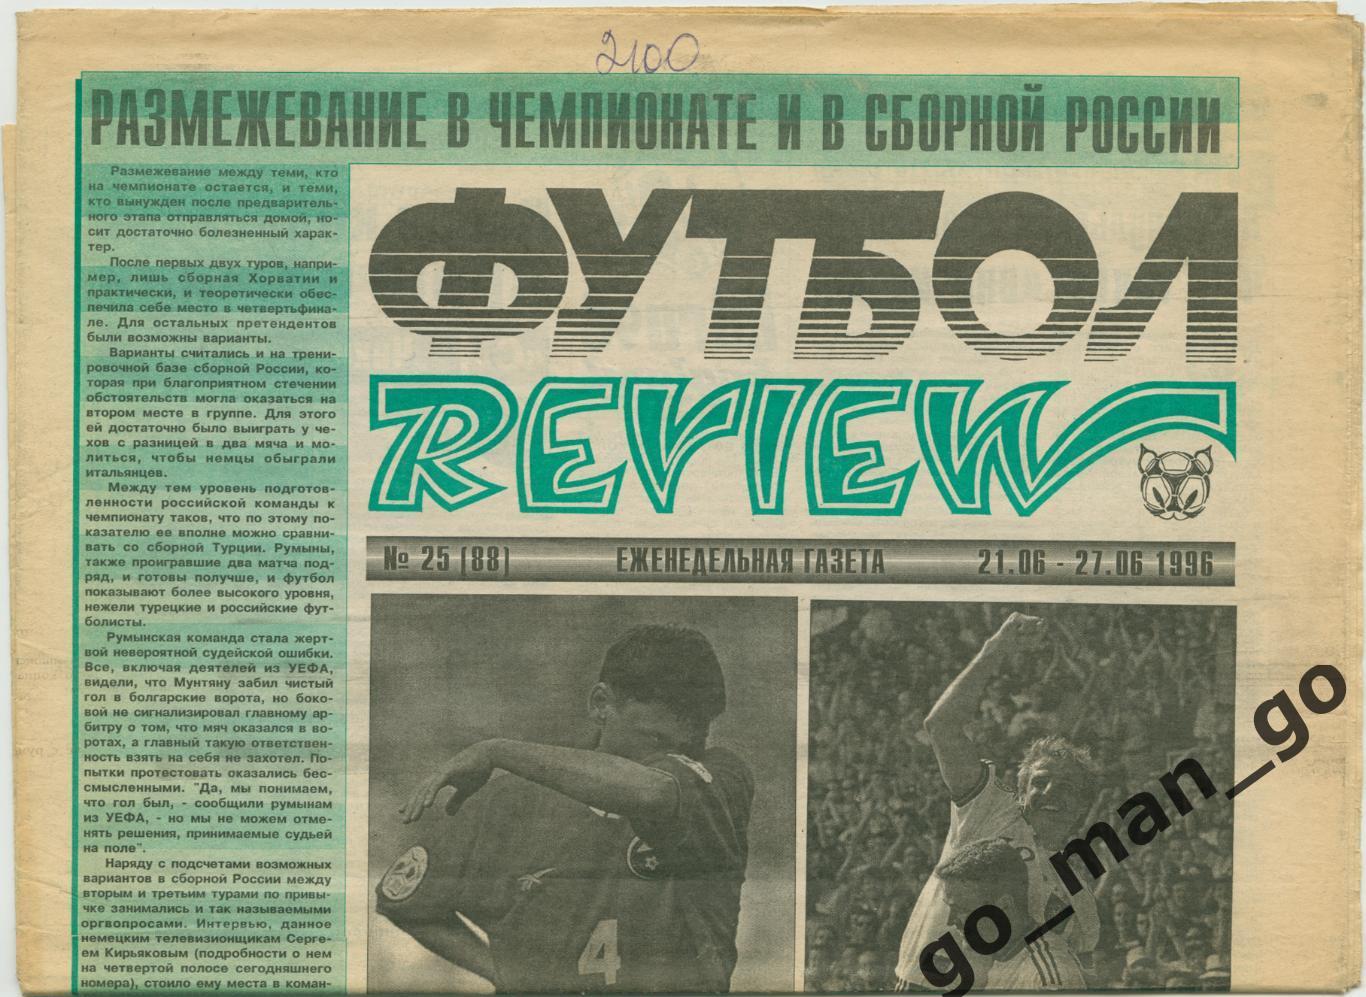 Еженедельник Футбол-Review (Футбол-Ревю), 21-27.06.1996, № 25.